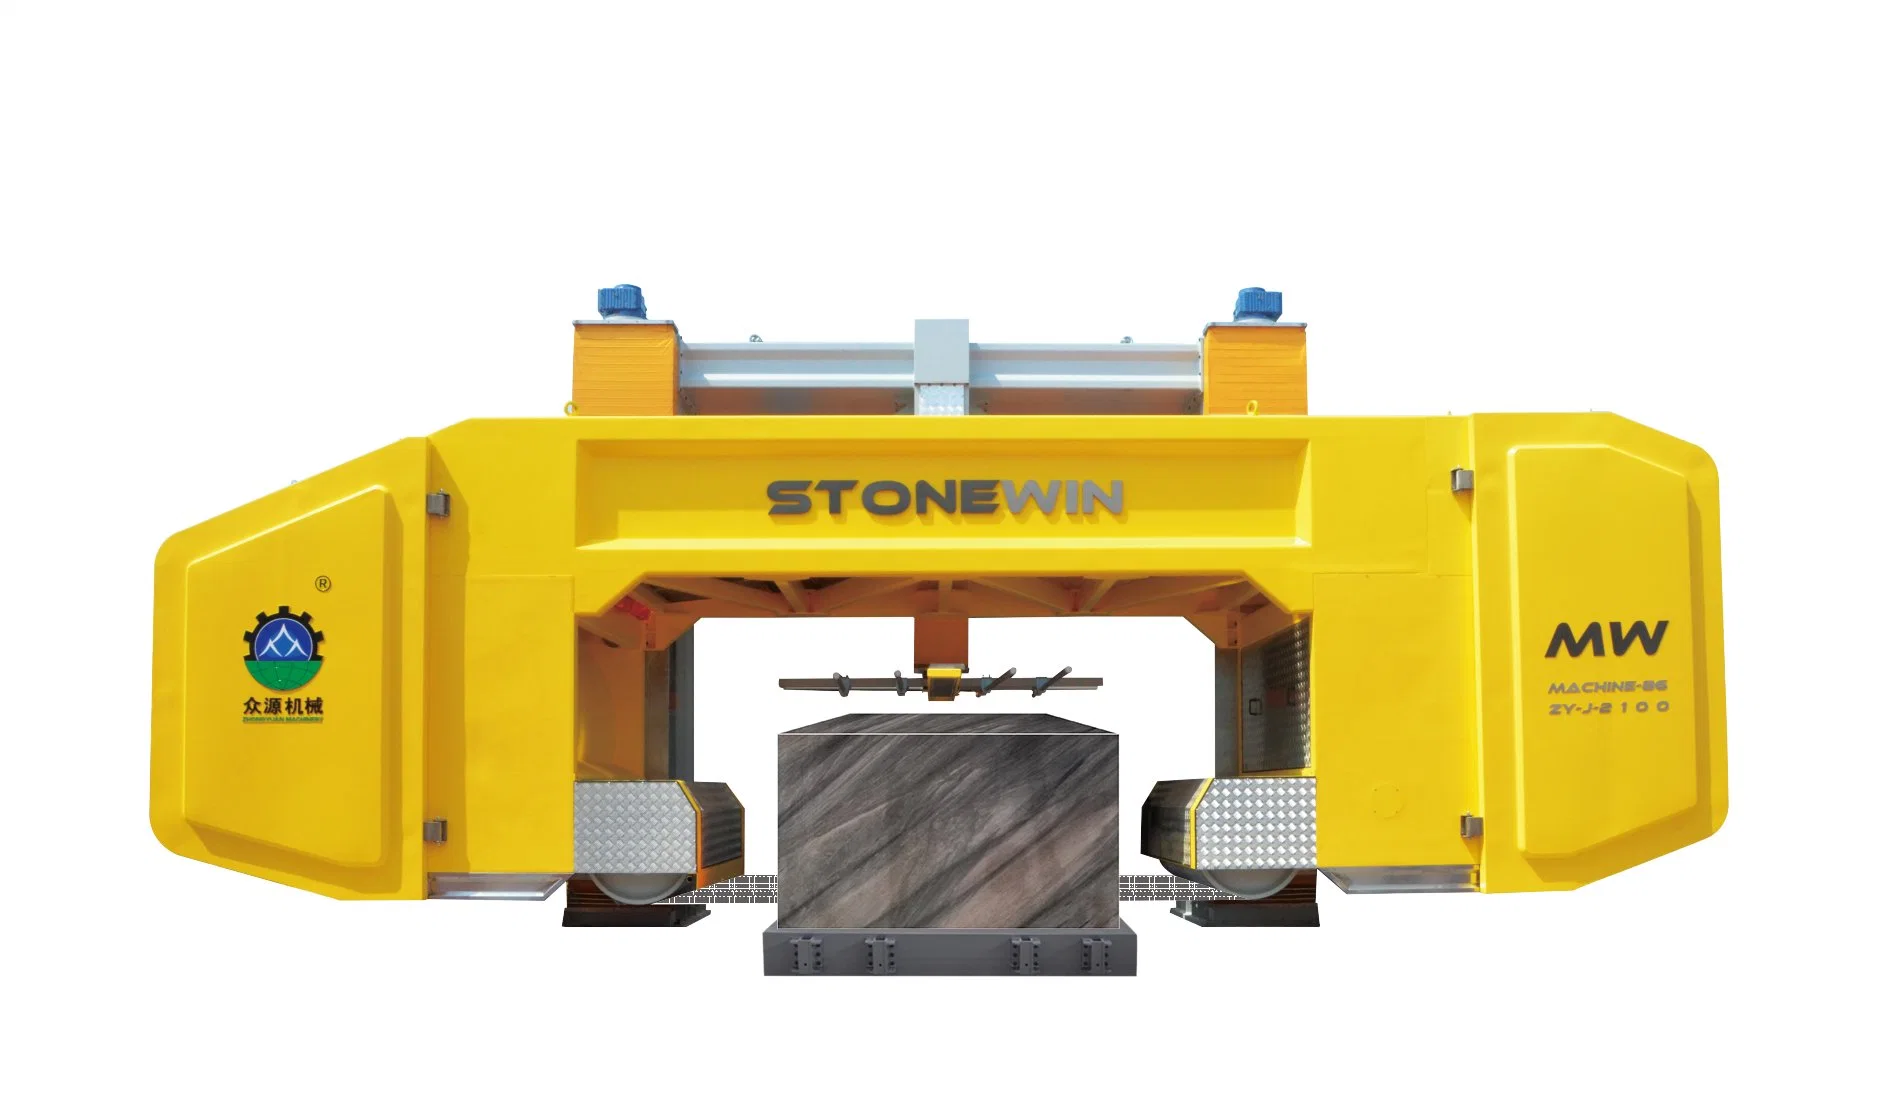 Zhongyuan Stonewin 58-Wire Diamond Multi-Wire SAW машина: Мастерство изготовления подъемного камня с прецизионной резкой блока